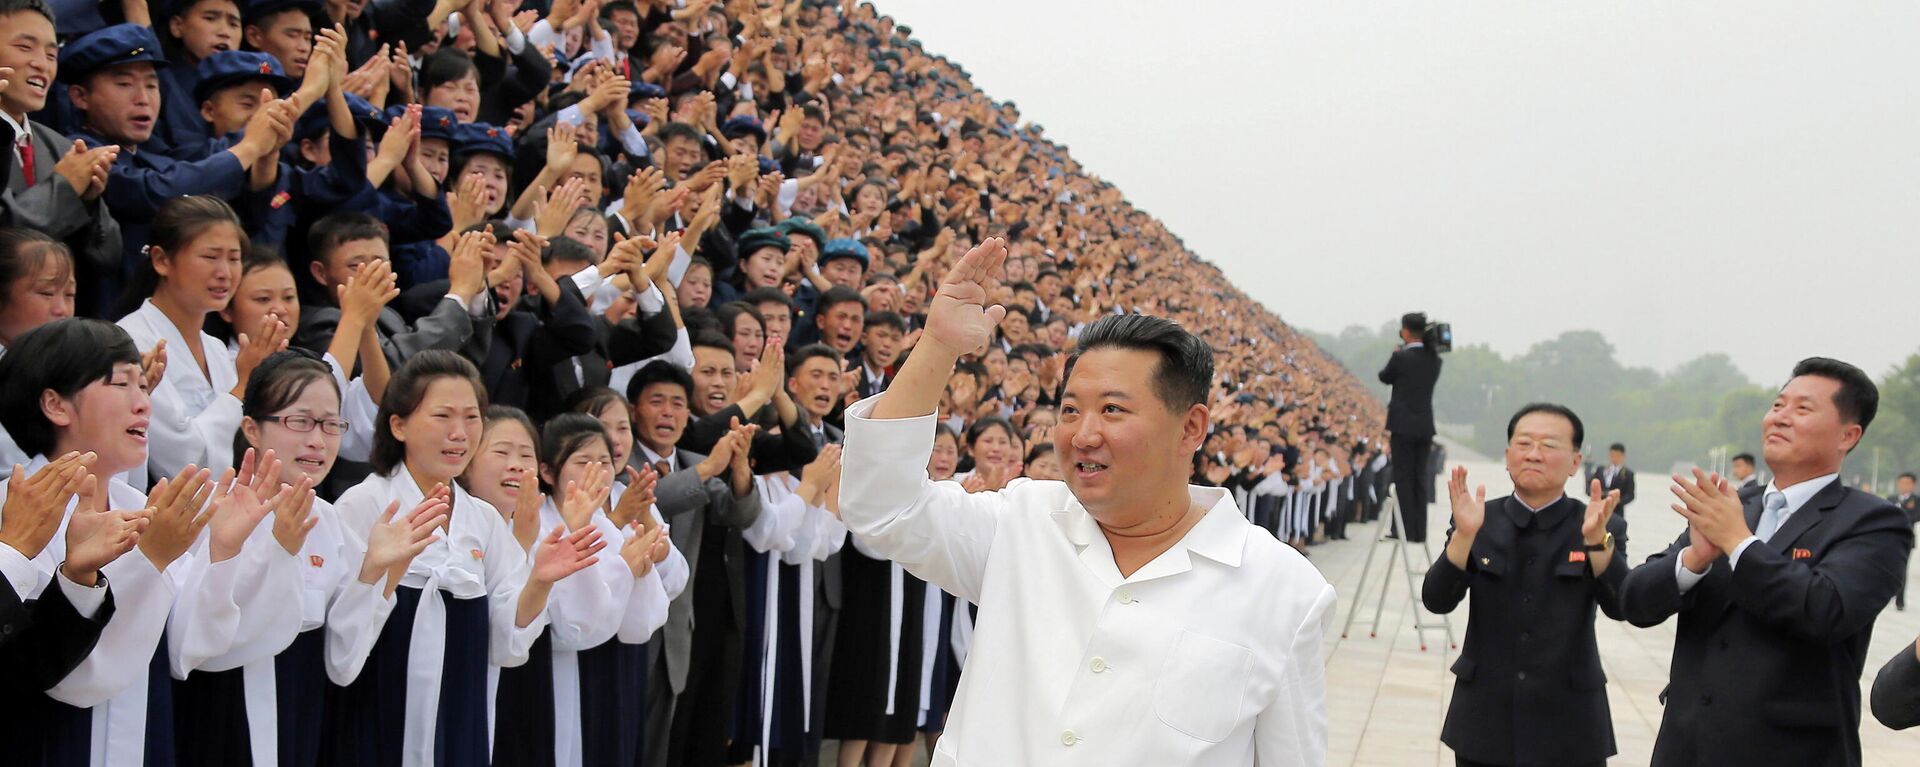 Kuzey Kore lideri Kim Jong-un, başkent Pyongyang'daki Gençlik Günü kutlamalarında öğrencileri selamlarken - Sputnik Türkiye, 1920, 02.09.2021